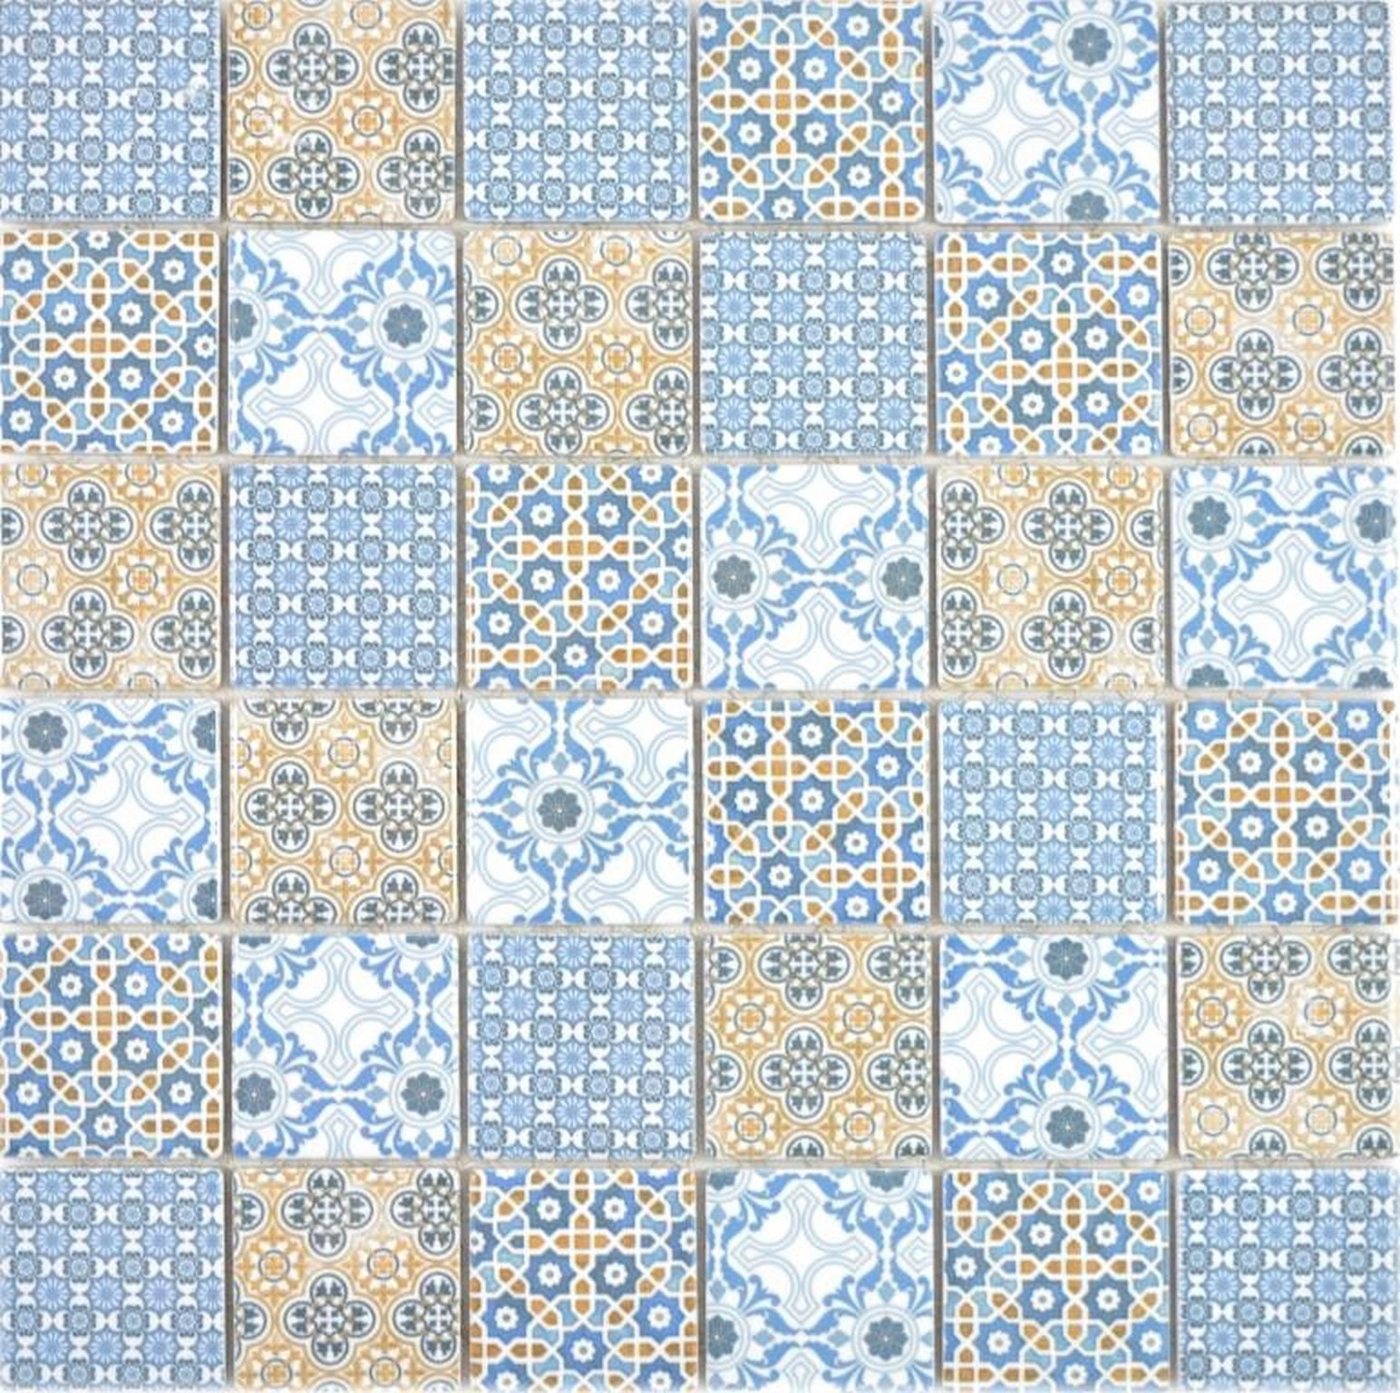 Mosani Mosaikfliesen Keramik Mosaik Fliese Retro beige gelb blau weis von Mosani